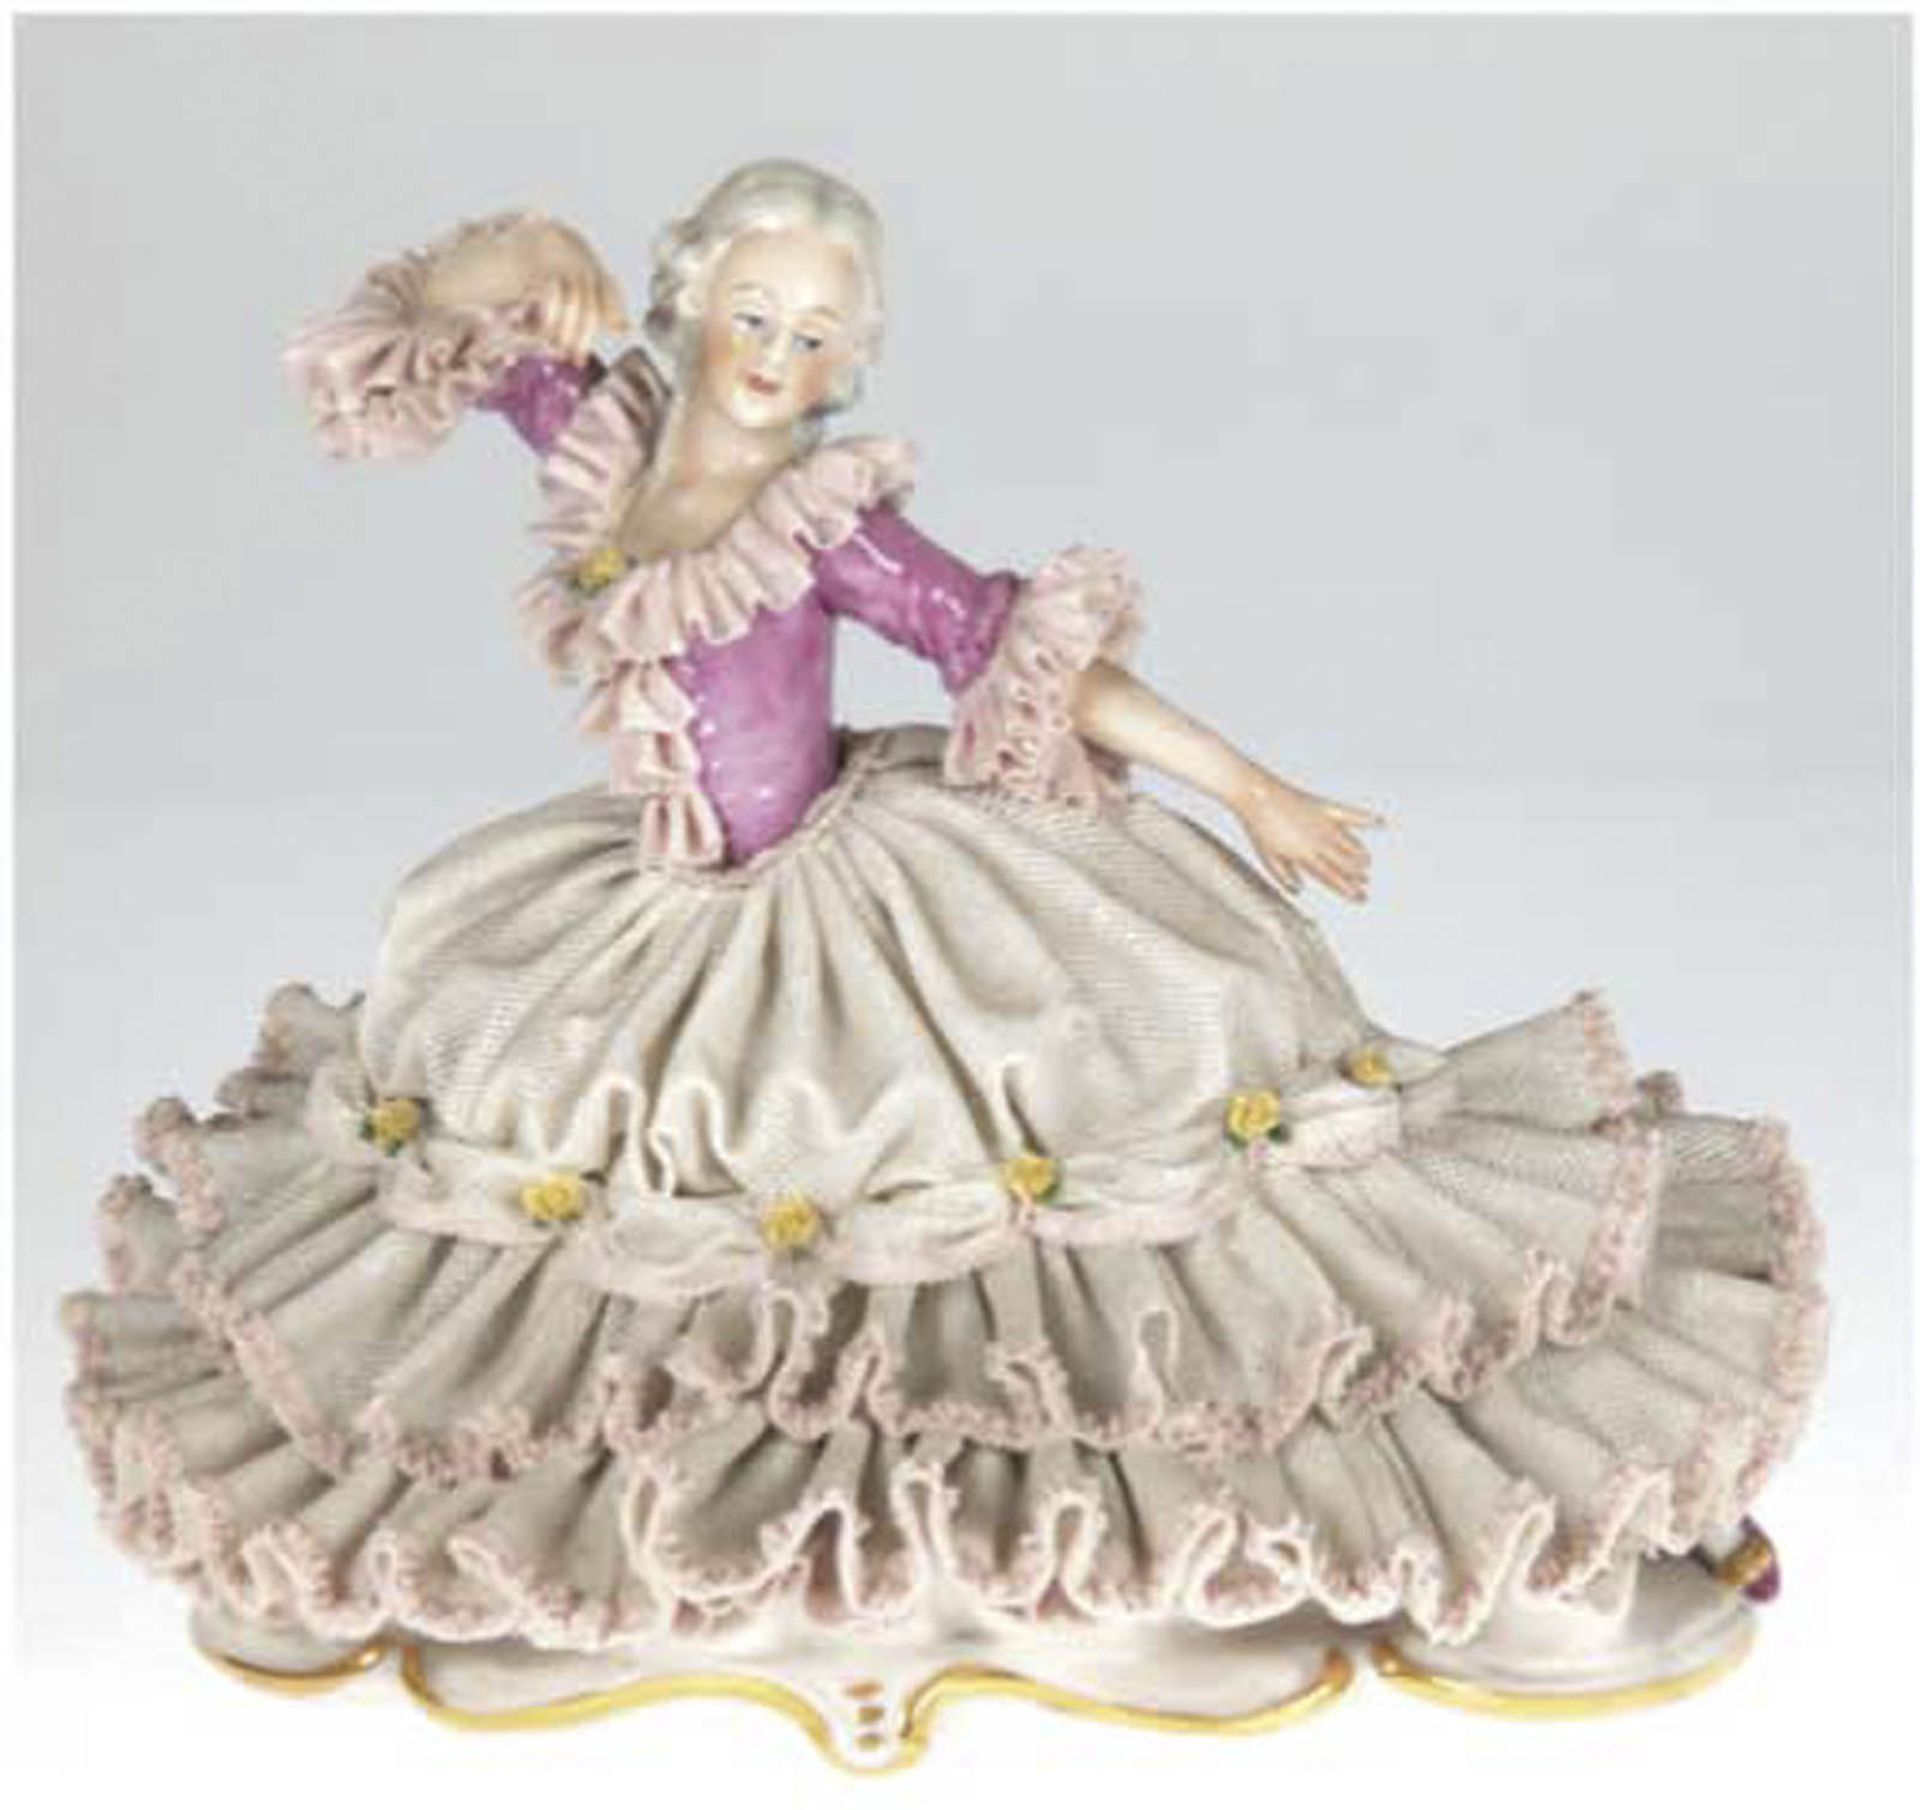 Porzellan-Figur "Tänzerin im Spitzenkleid", polychrom bemalt, unterseitig gemarkt, Gebrauchs